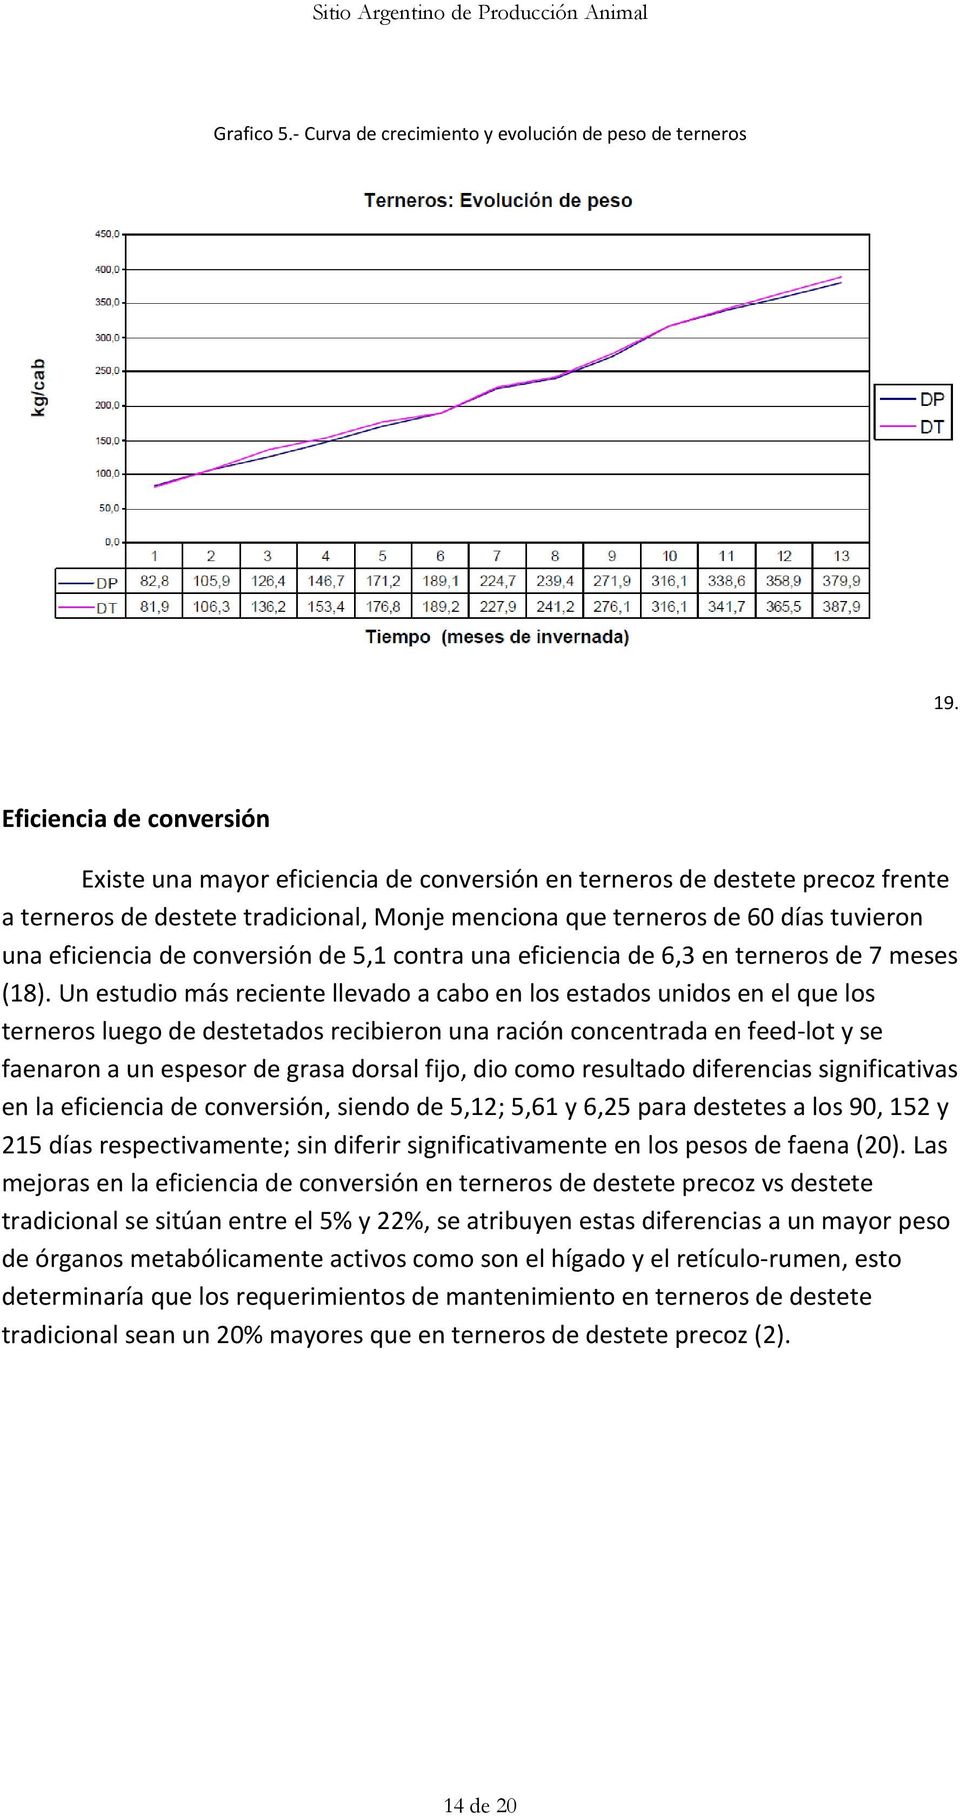 eficiencia de conversión de 5,1 contra una eficiencia de 6,3 en terneros de 7 meses (18).